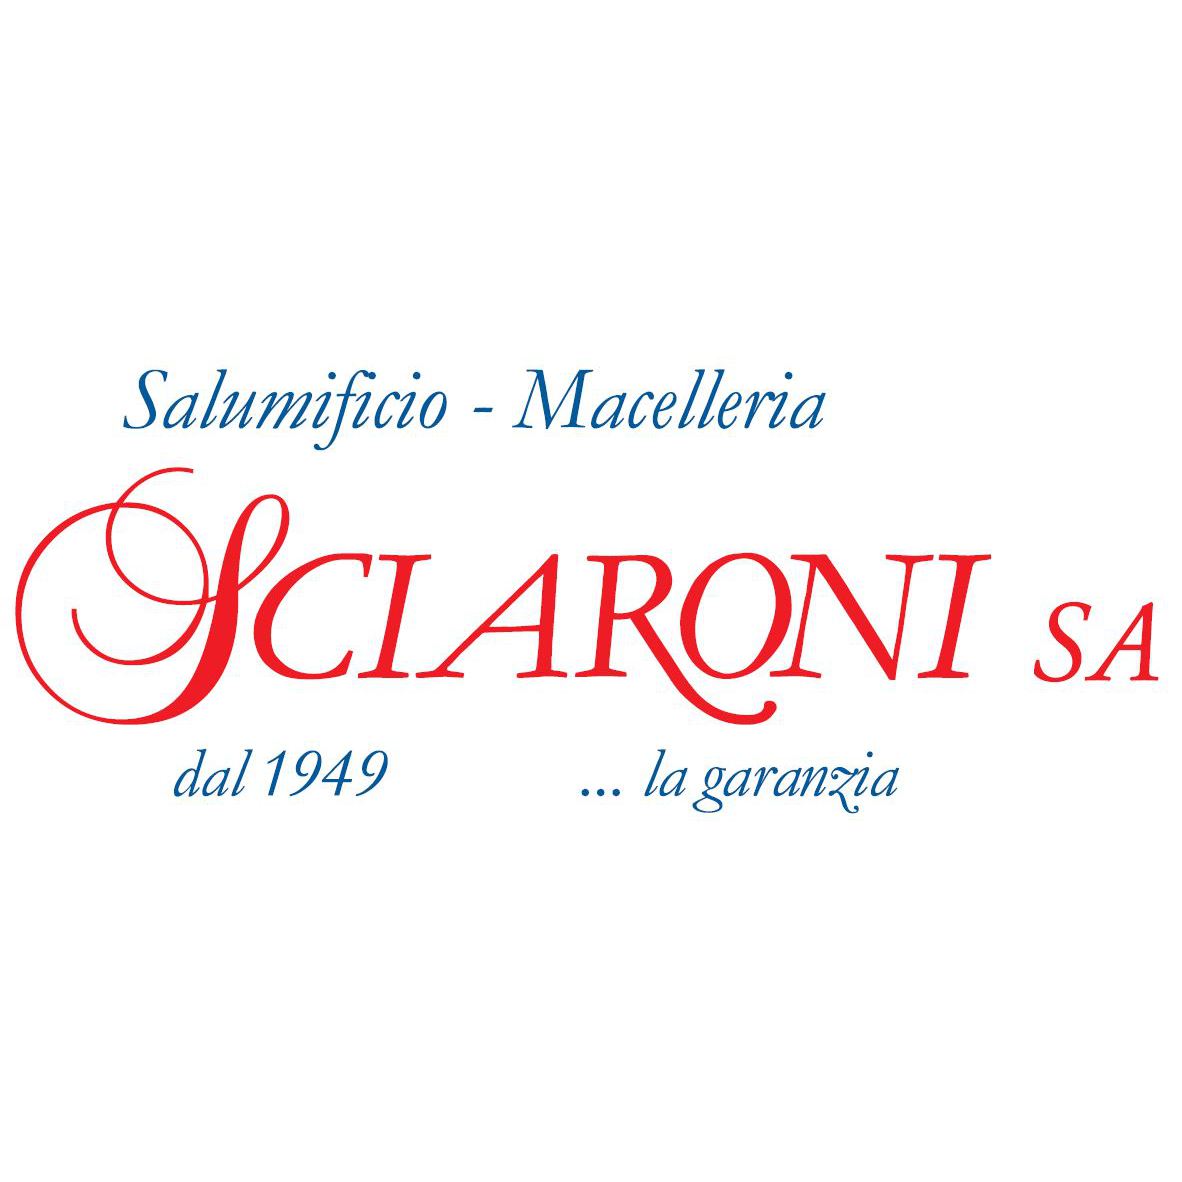 Macelleria - Salumificio Sciaroni SA Logo